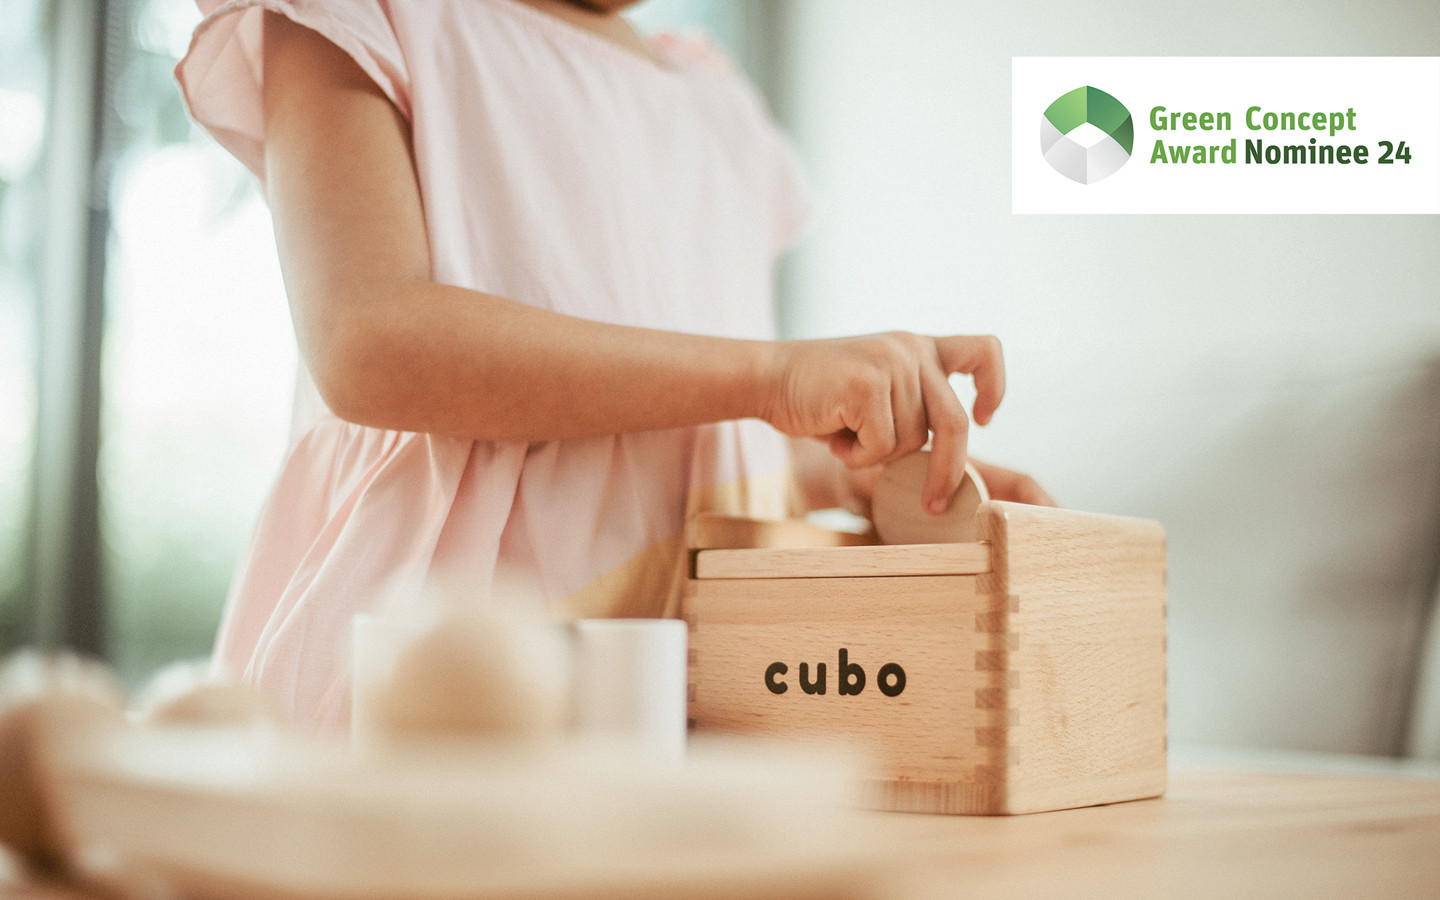 Caja Cubo Montessori